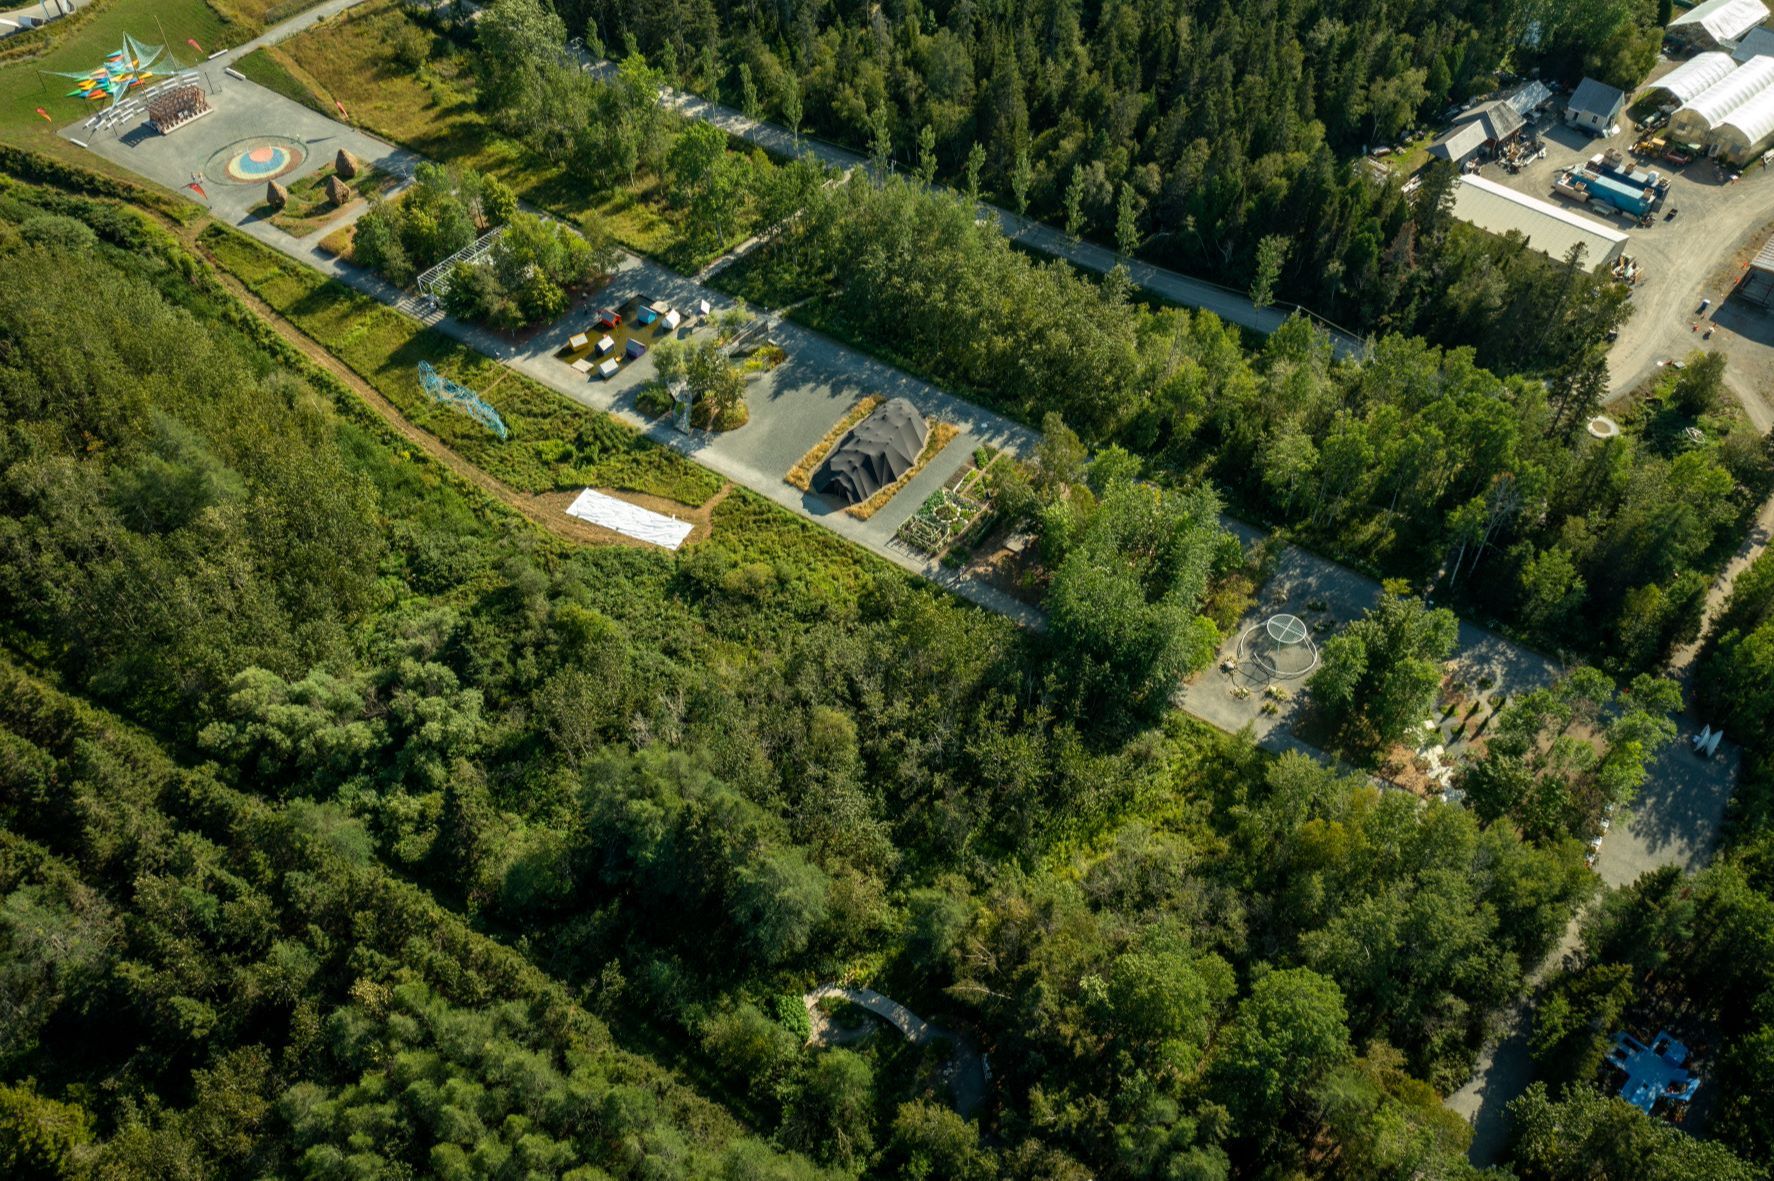 CONFÉRENCE | Le Jardin comme outil de régénération écologique - Émile Forest, en collaboration avec l’École d’été de l’Université de Montréal